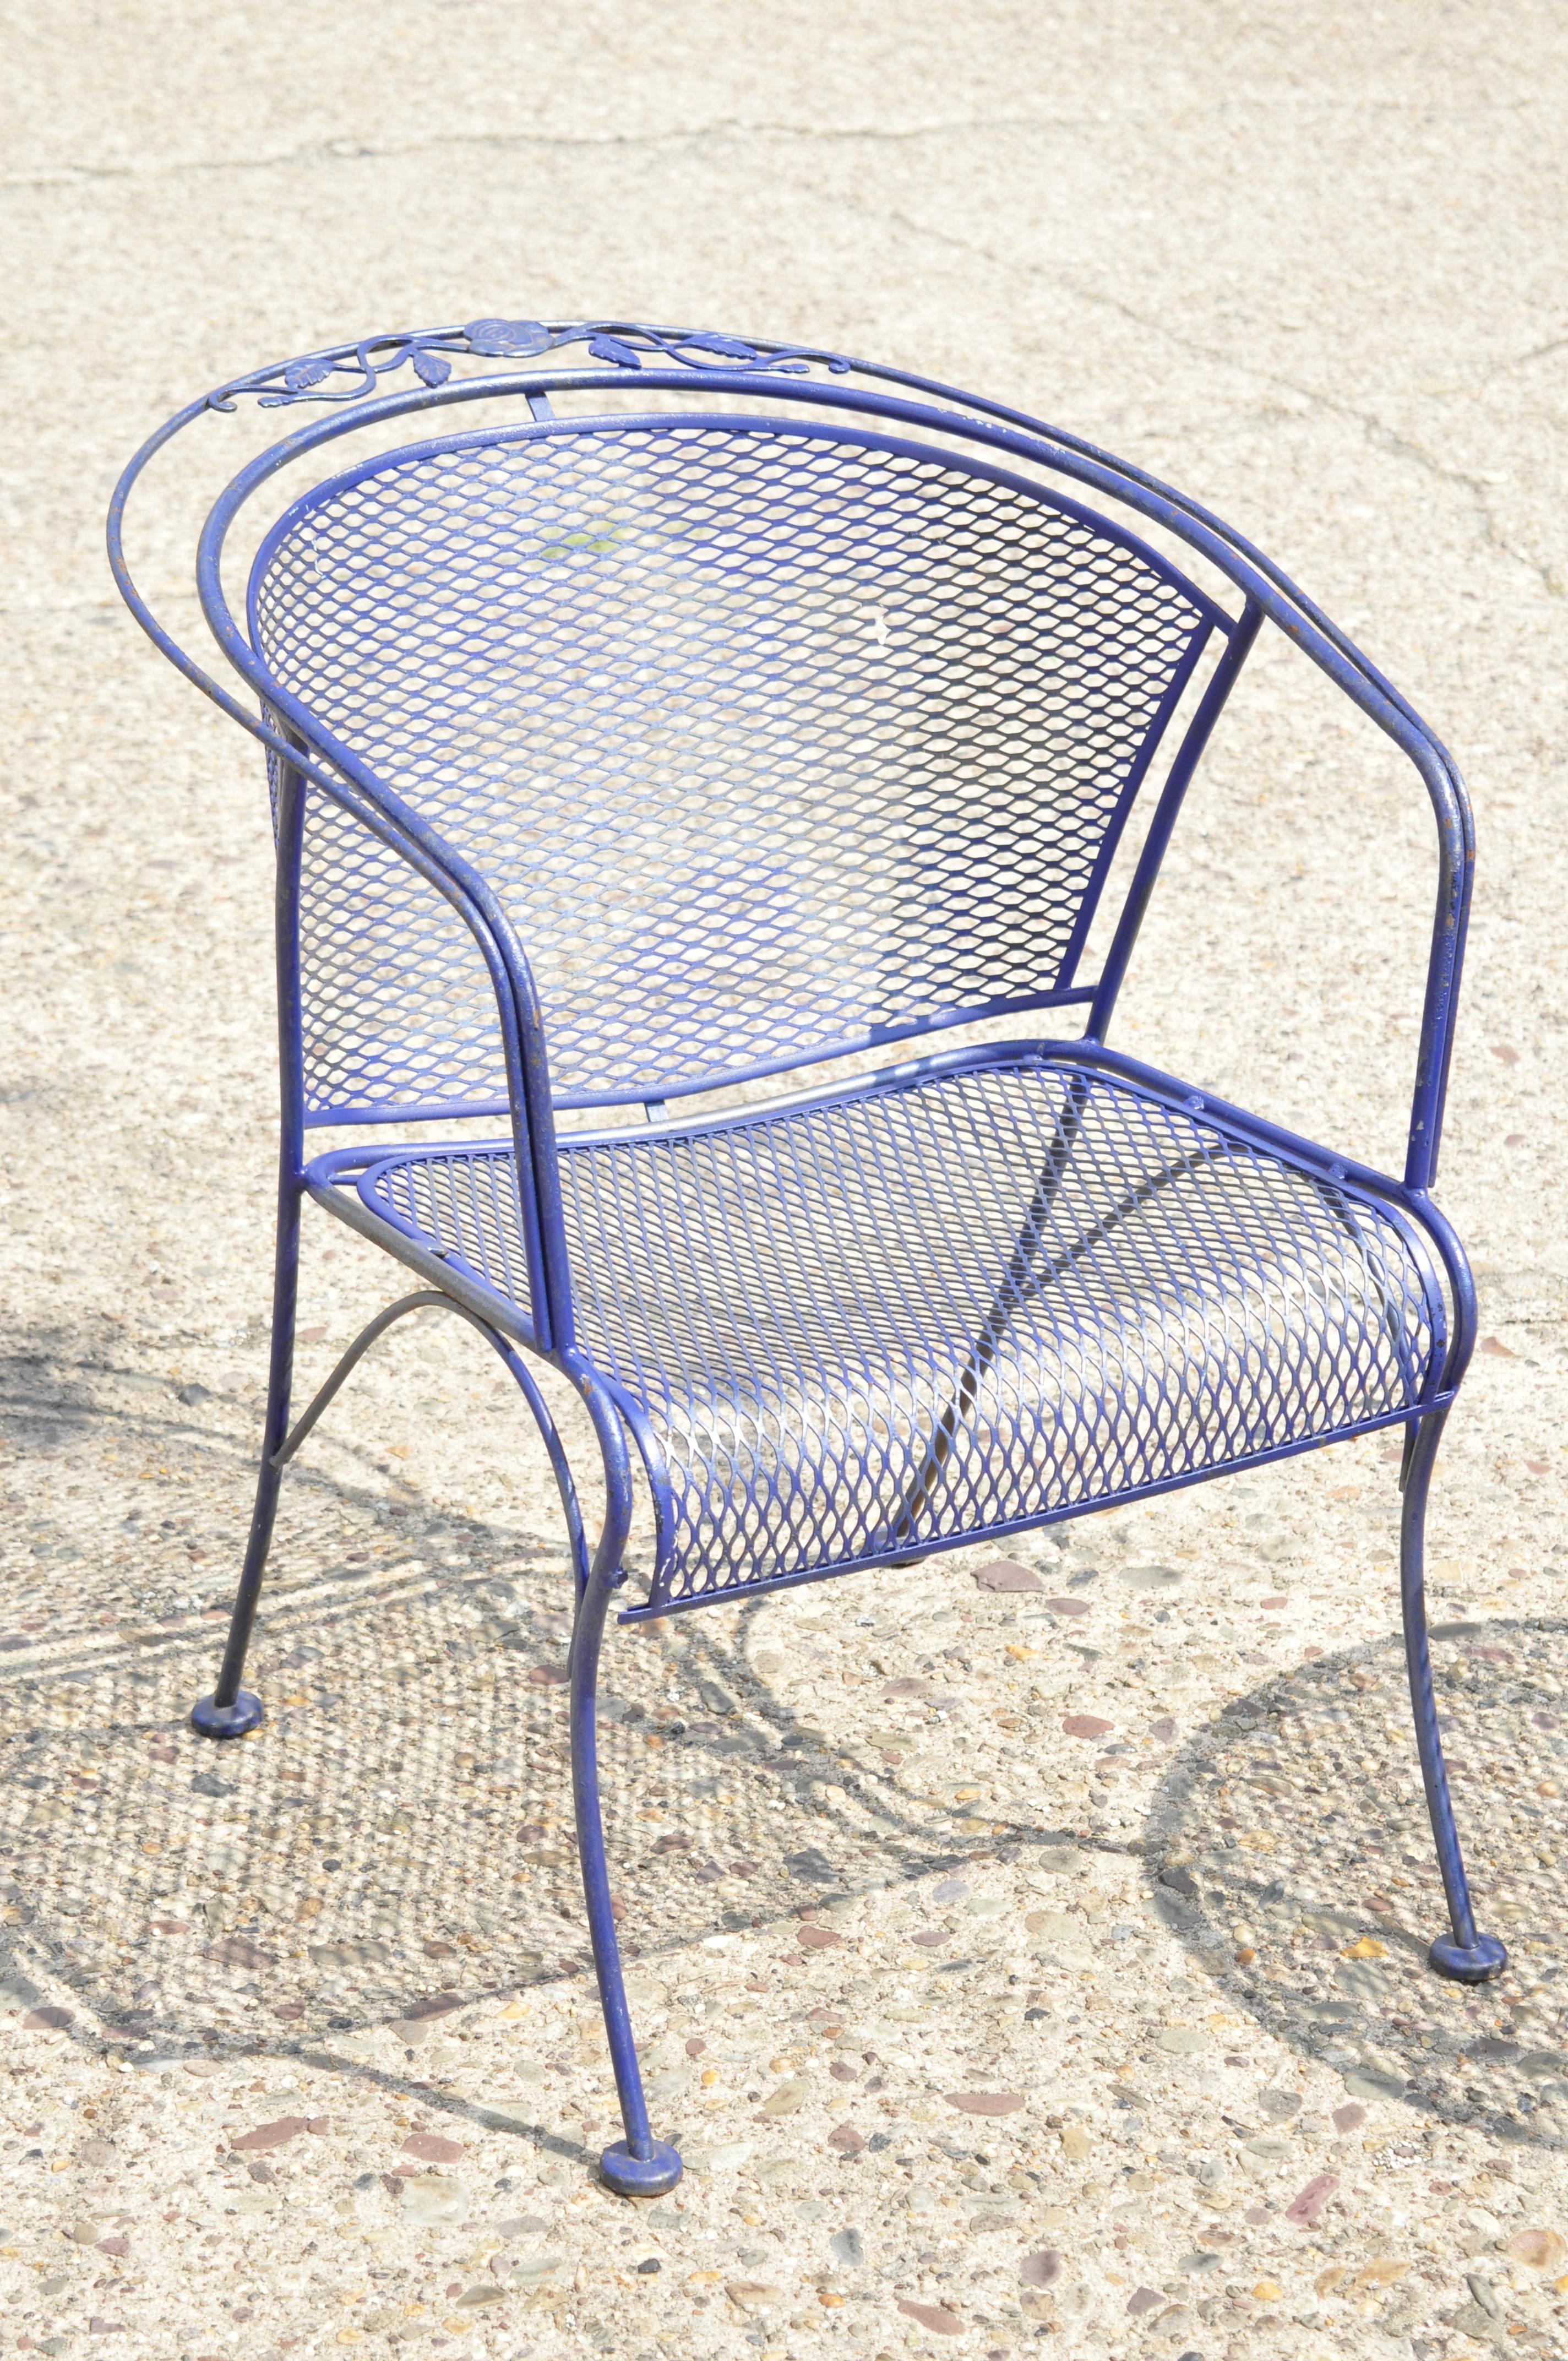 20. Jahrhundert Woodard Barrel zurück blau Schmiedeeisen Rose Muster Garten Sessel und Beistelltisch gesetzt. Das Set besteht aus (2) Sesseln, (1) rundem Beistelltisch, Netzplatten, Schmiedeeisen-Konstruktion, Original-Etikett, sehr schönes